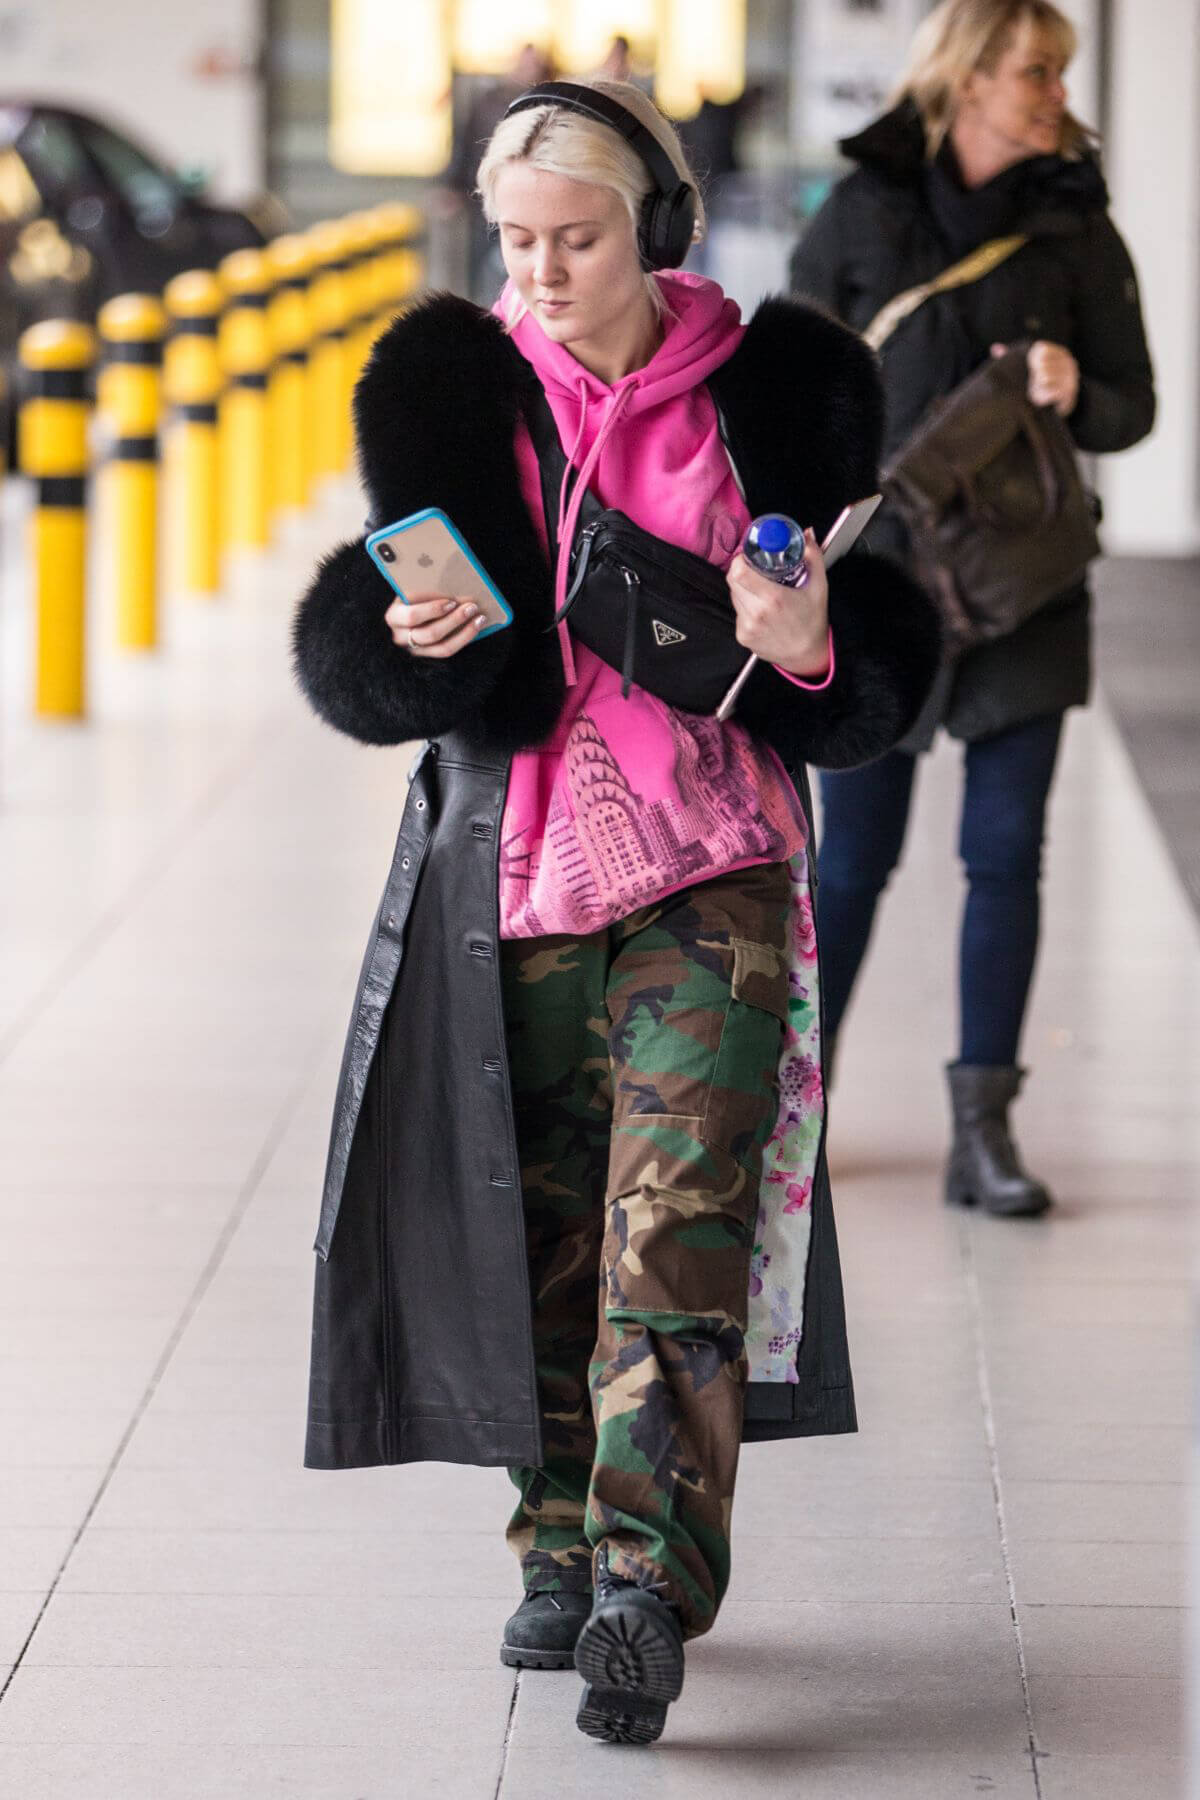 Zara Larsson at Berlin Tegel Airport 2018/12/14